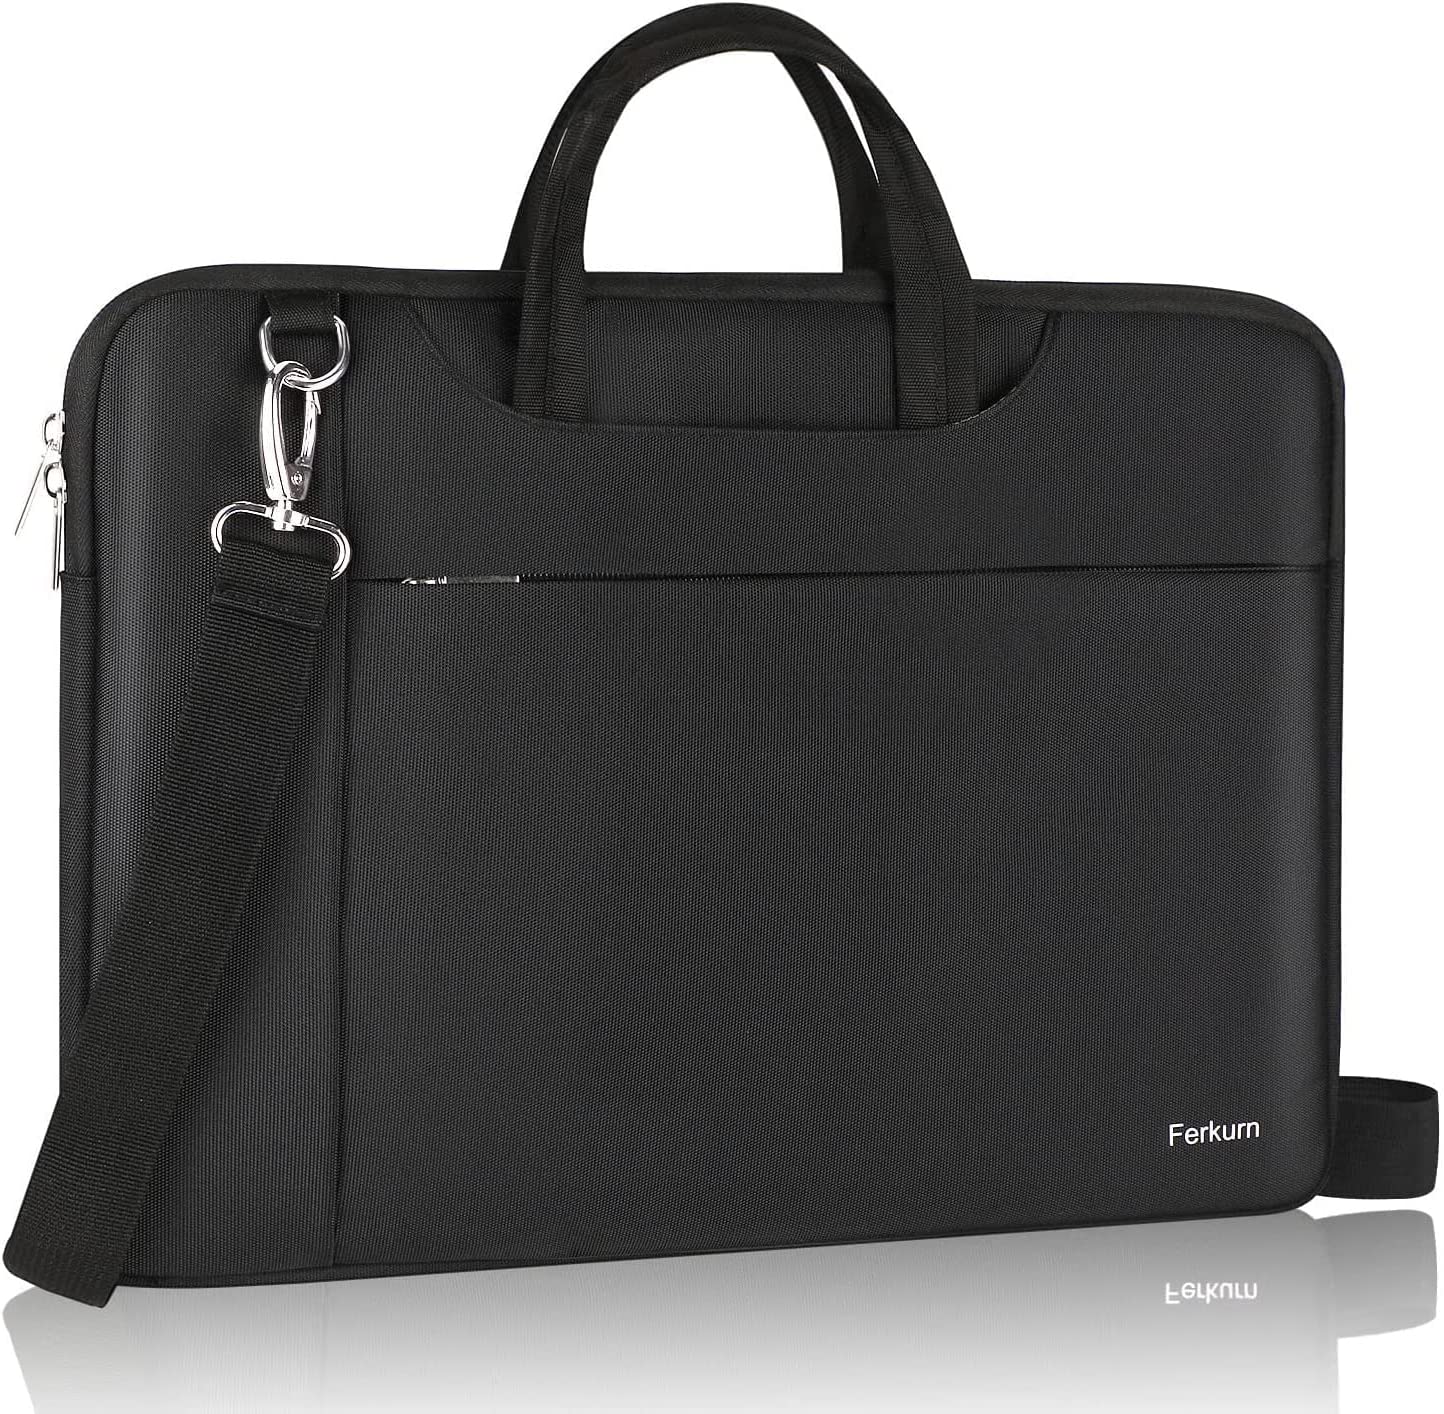 17" Laptop Carry Case